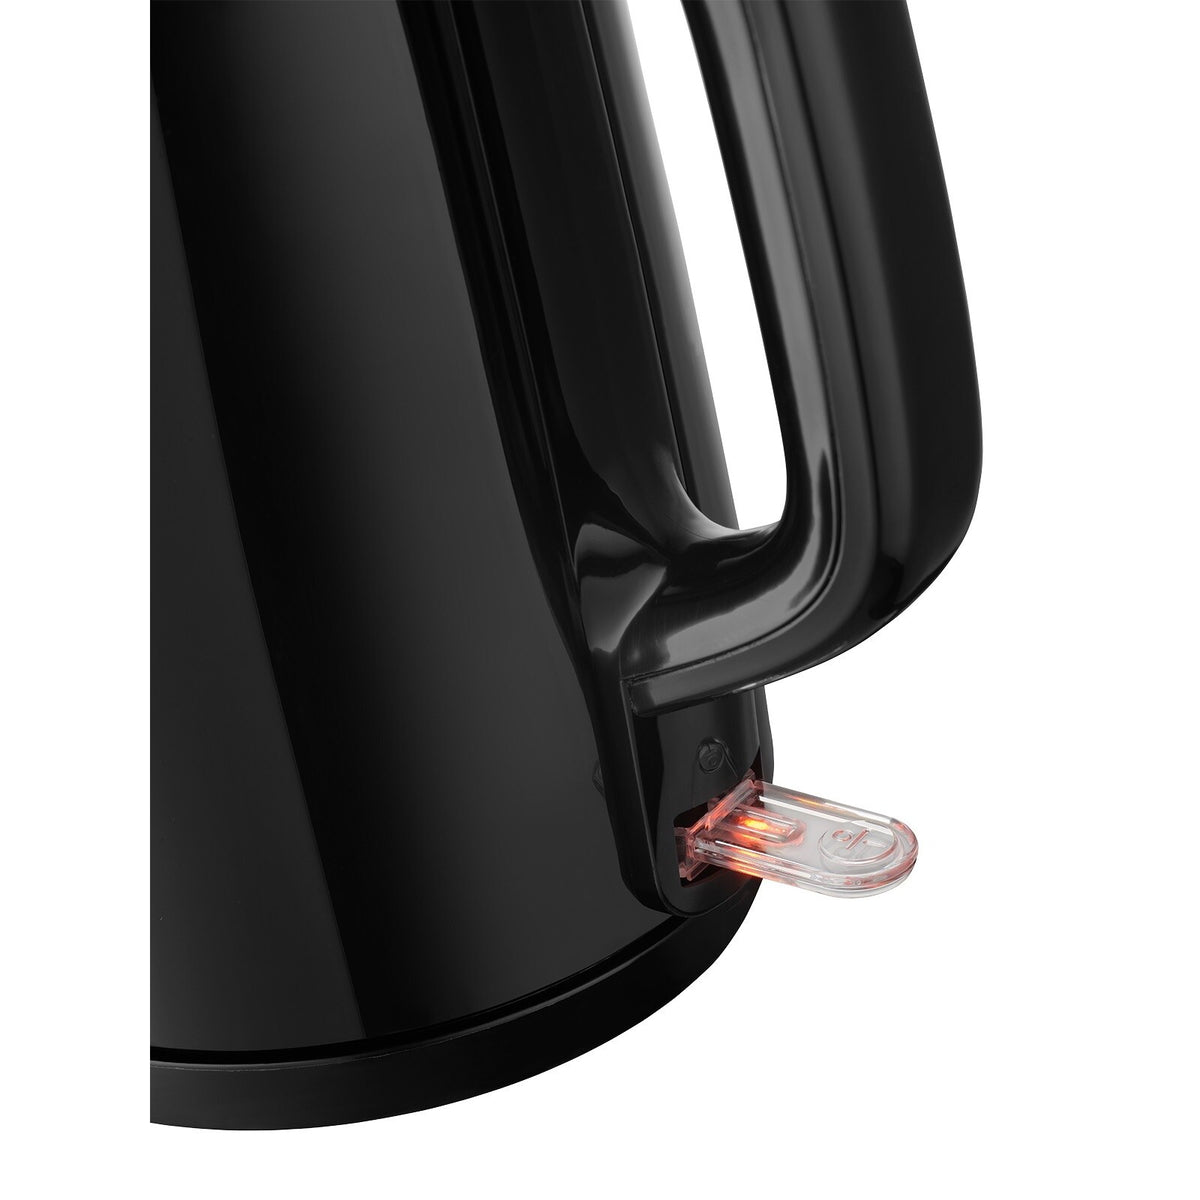 Rýchlovarná kanvica Concept RK2381, čierna, 1,7 l